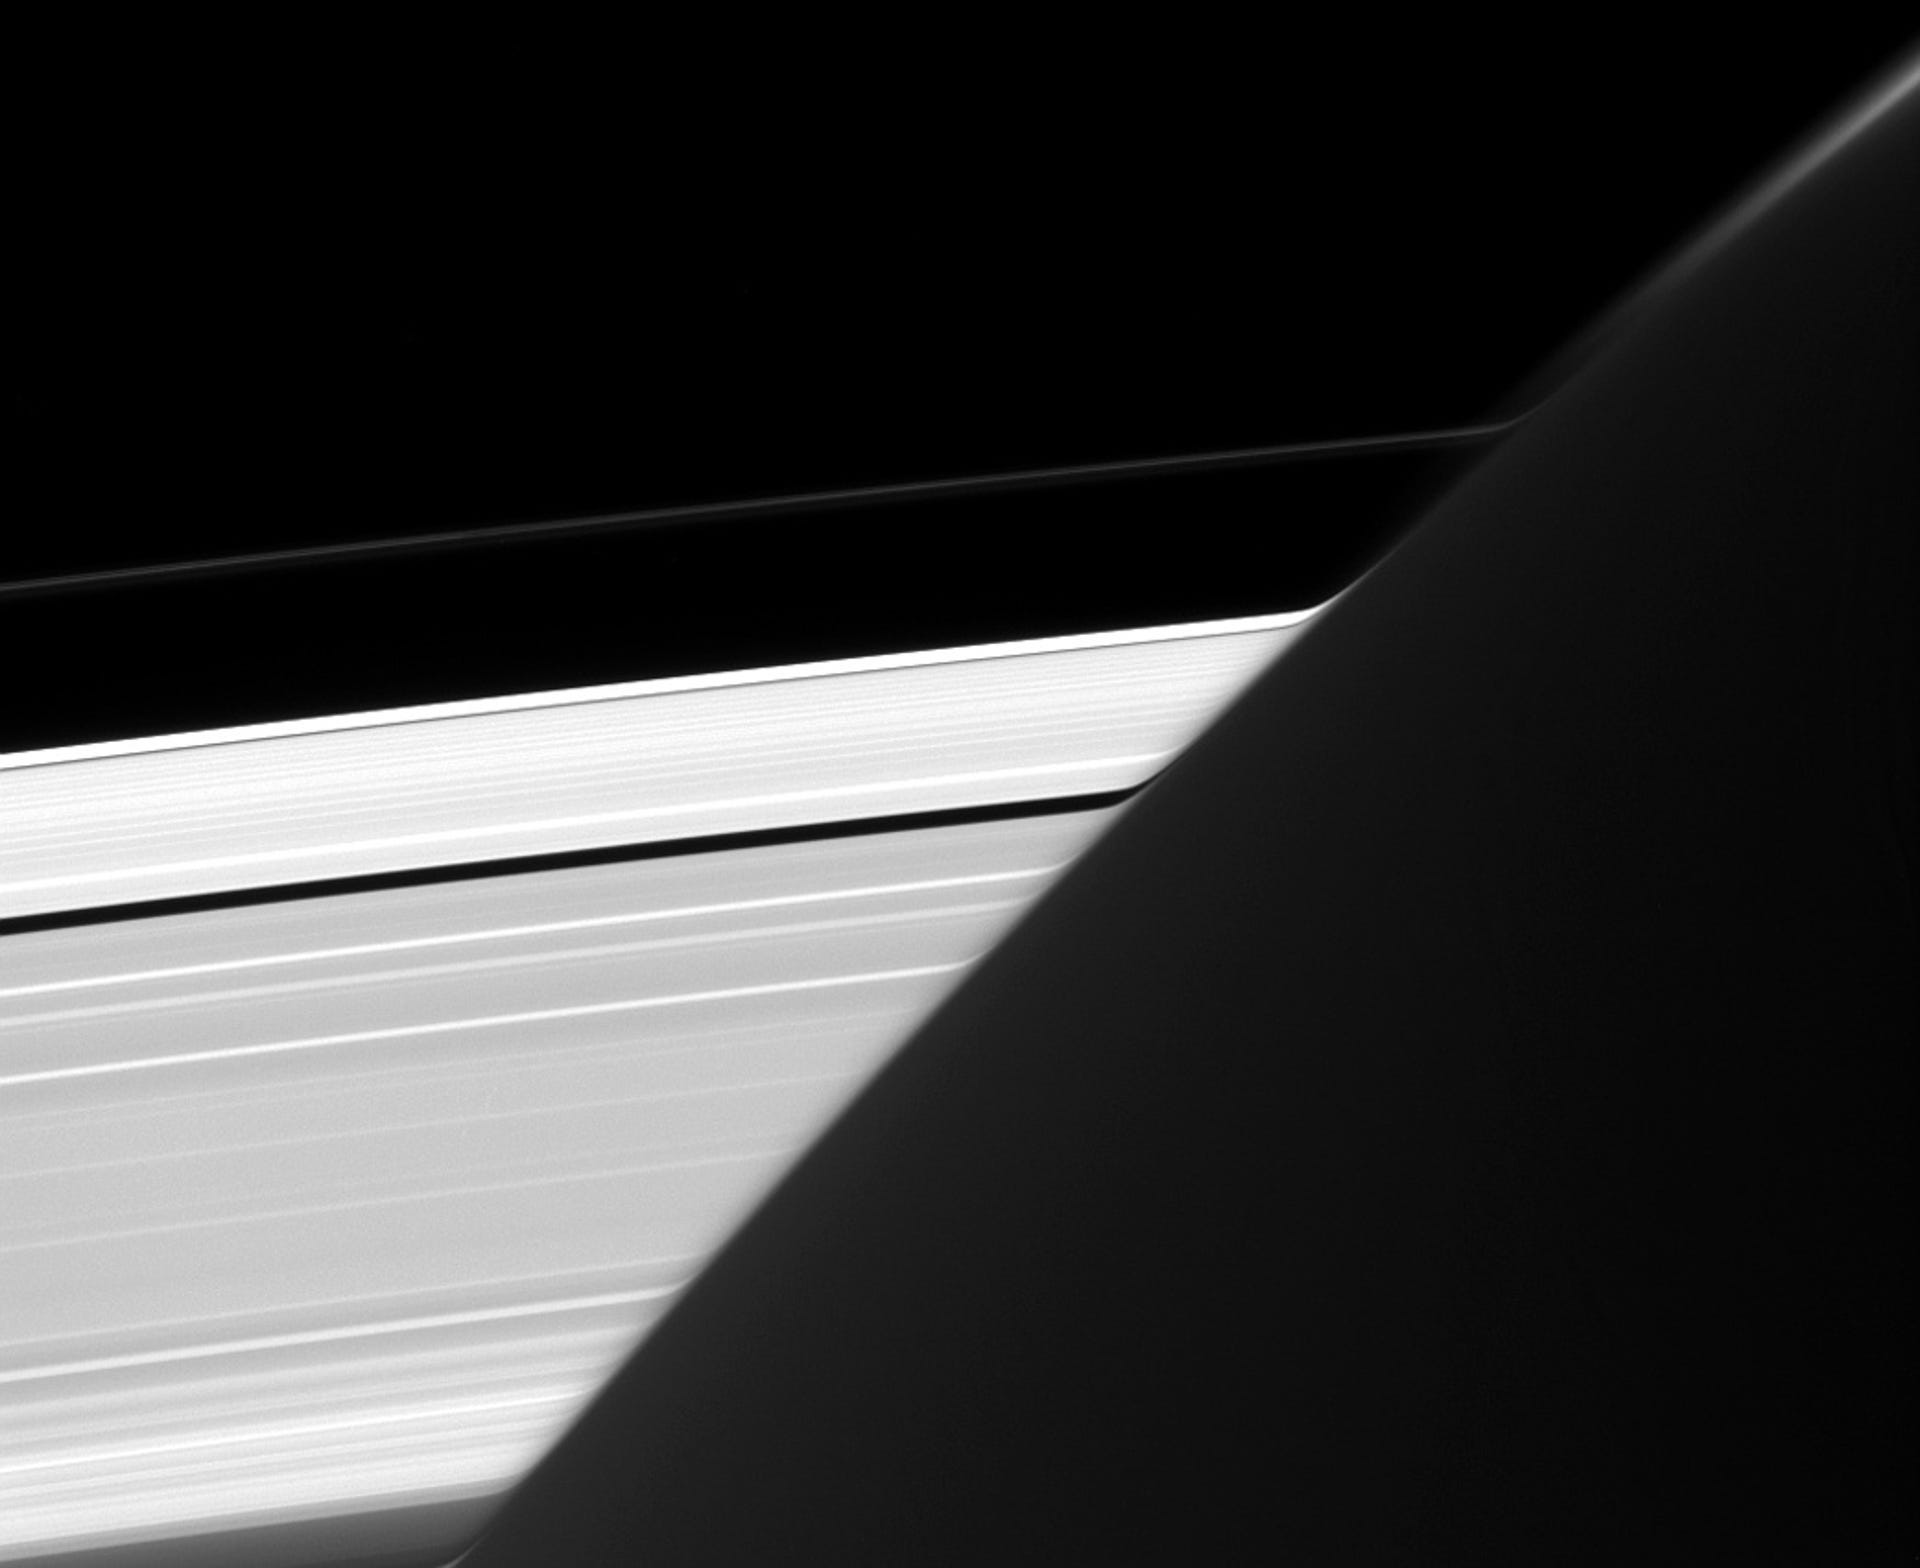 Saturn's bent rings